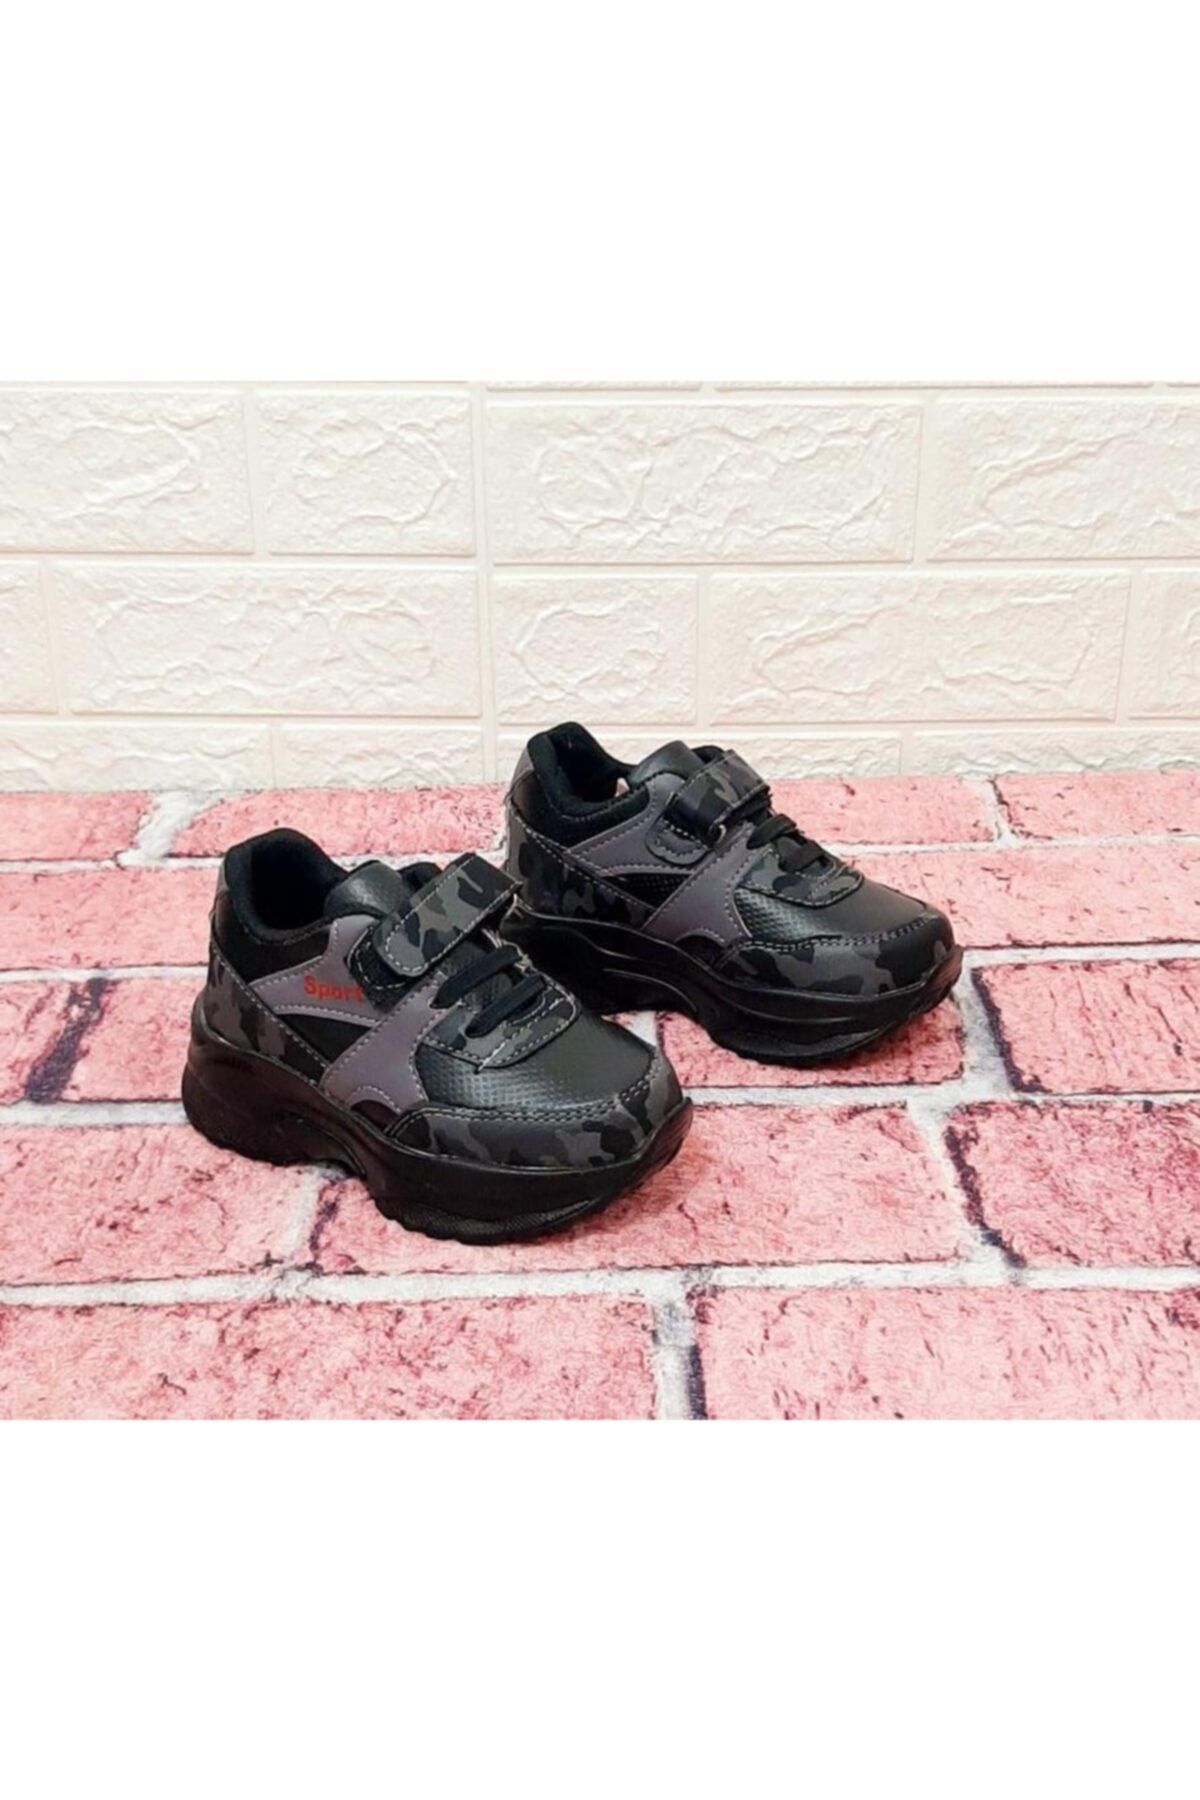 Polaris 517108 Siyah Renk Siyah-gri Kamuflaj Desenli Hafif Cıırtlı Erkek Çocuk Spor Ayakkabı